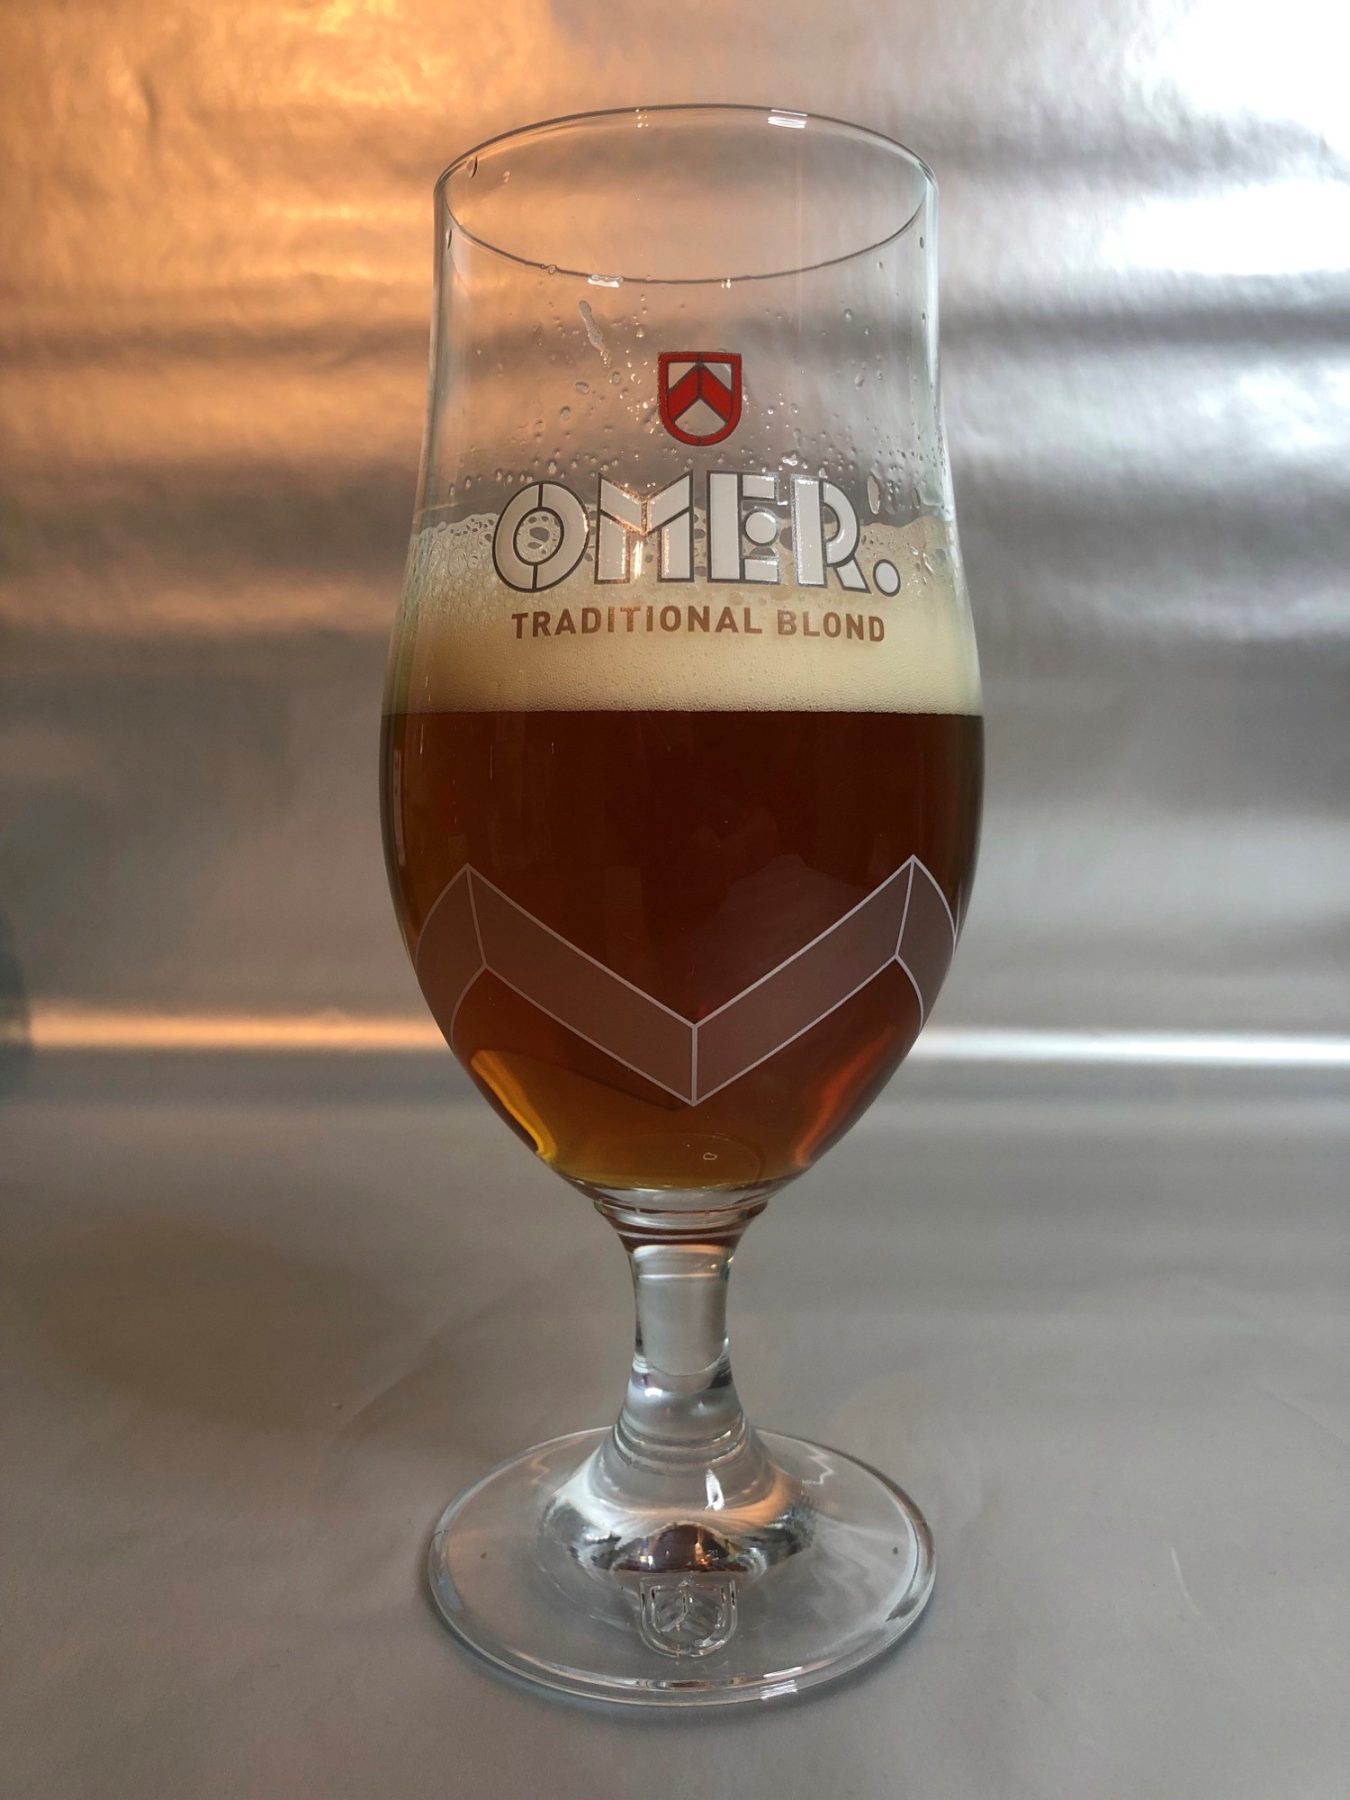 Omer beer glass